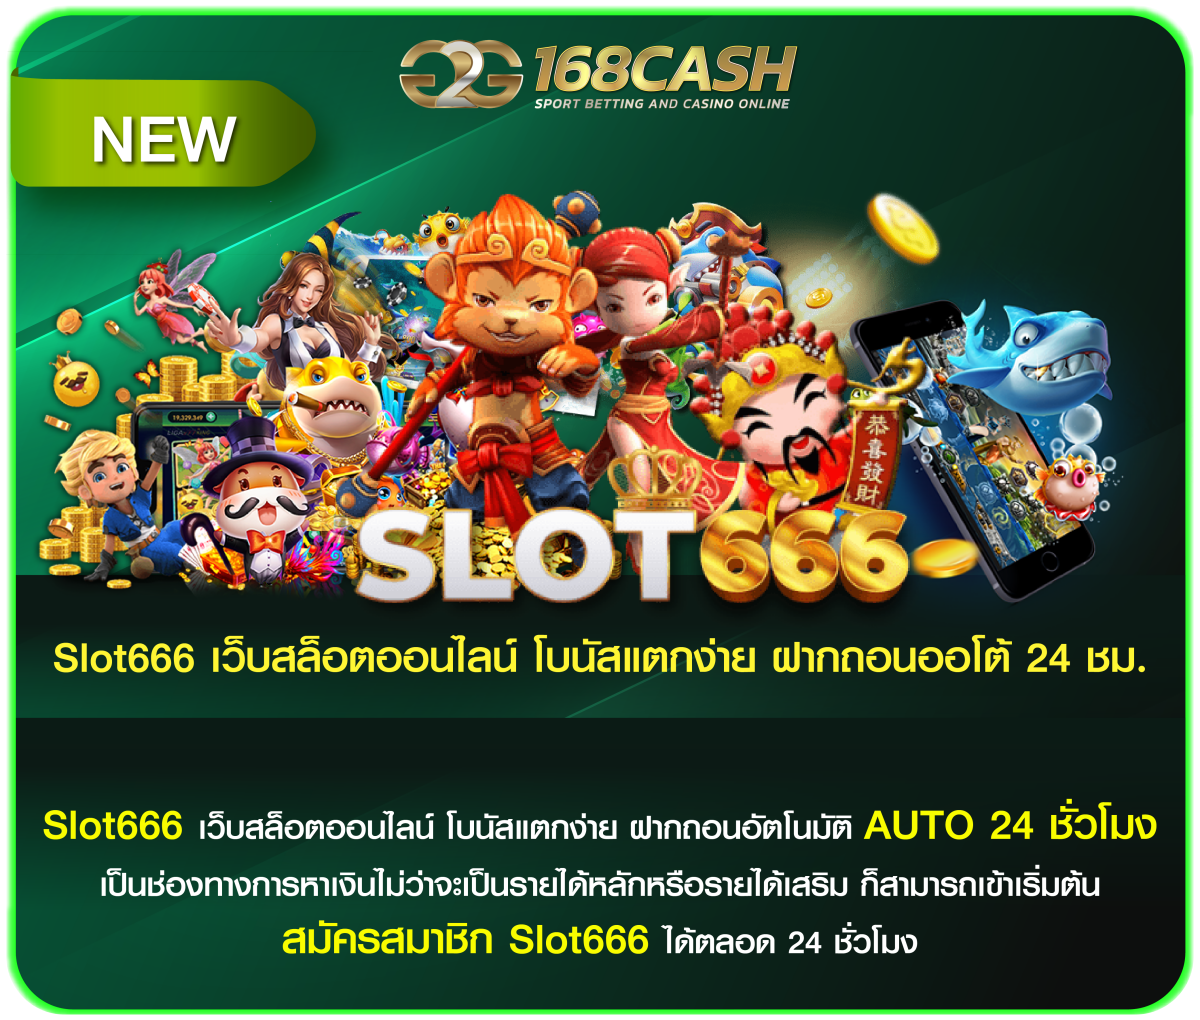 Slot666 เว็บสล็อตออนไลน์